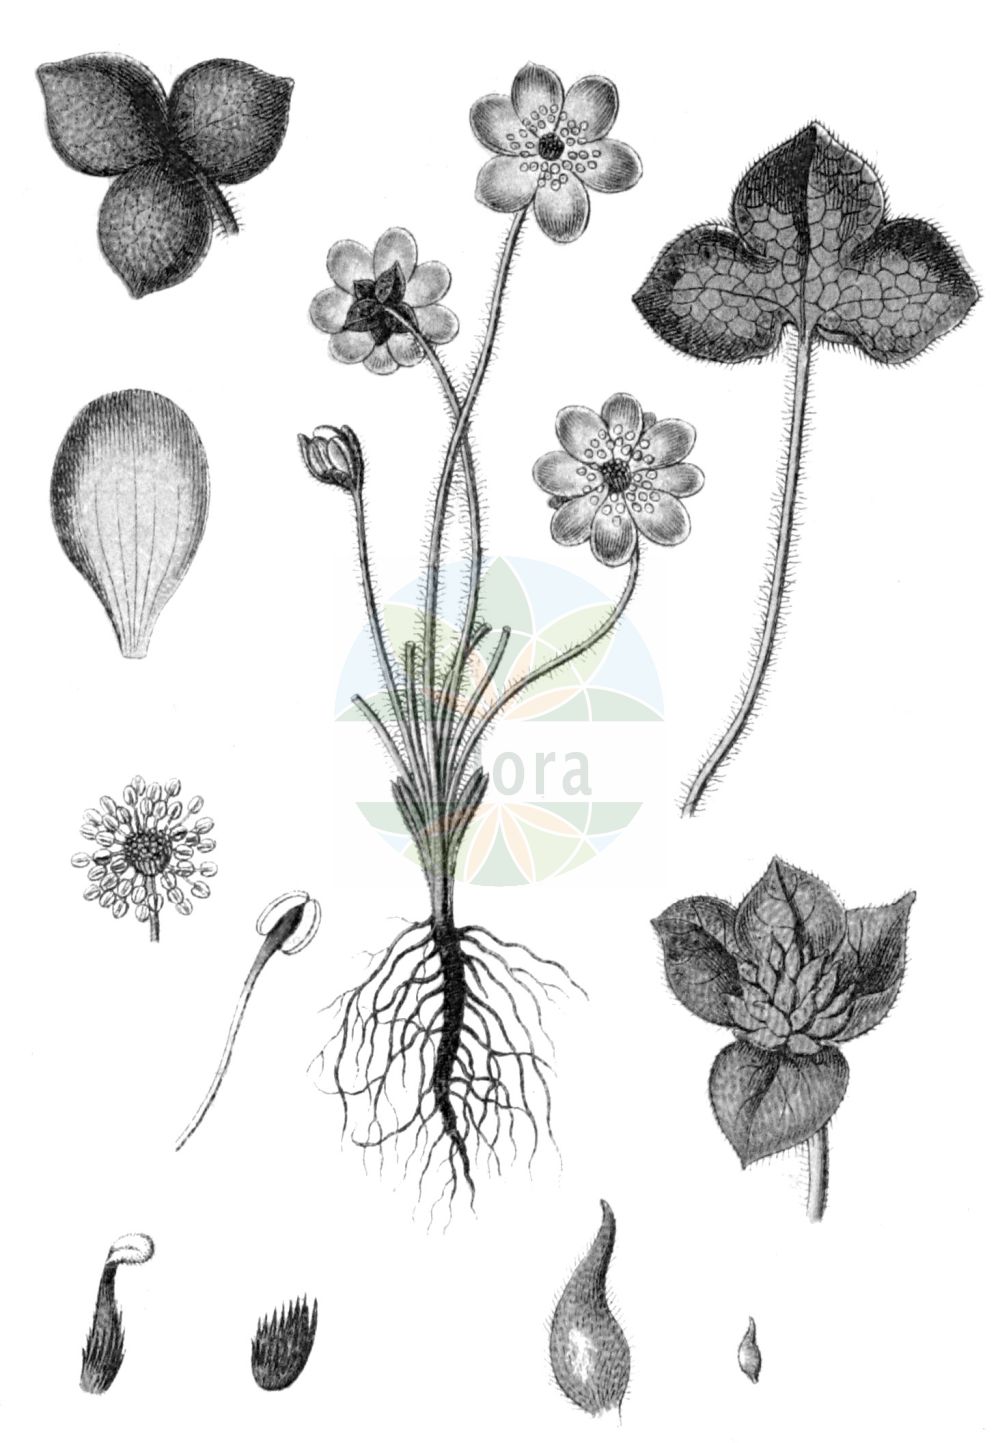 Historische Abbildung von Hepatica nobilis (Echtes Leberblümchen - Liverleaf). Das Bild zeigt Blatt, Bluete, Frucht und Same. ---- Historical Drawing of Hepatica nobilis (Echtes Leberblümchen - Liverleaf). The image is showing leaf, flower, fruit and seed.(Hepatica nobilis,Echtes Leberblümchen,Liverleaf,Anemone hepatica,Hepatica nobilis,Hepatica triloba,Echtes Leberbluemchen,Leberbluemchen,Liverleaf,Herb Trinity,Liverwort,Hepatica,Leberblümchen,Hepatica,Ranunculaceae,Hahnenfußgewächse,Buttercup family,Blatt,Bluete,Frucht,Same,leaf,flower,fruit,seed,Sturm (1796f))